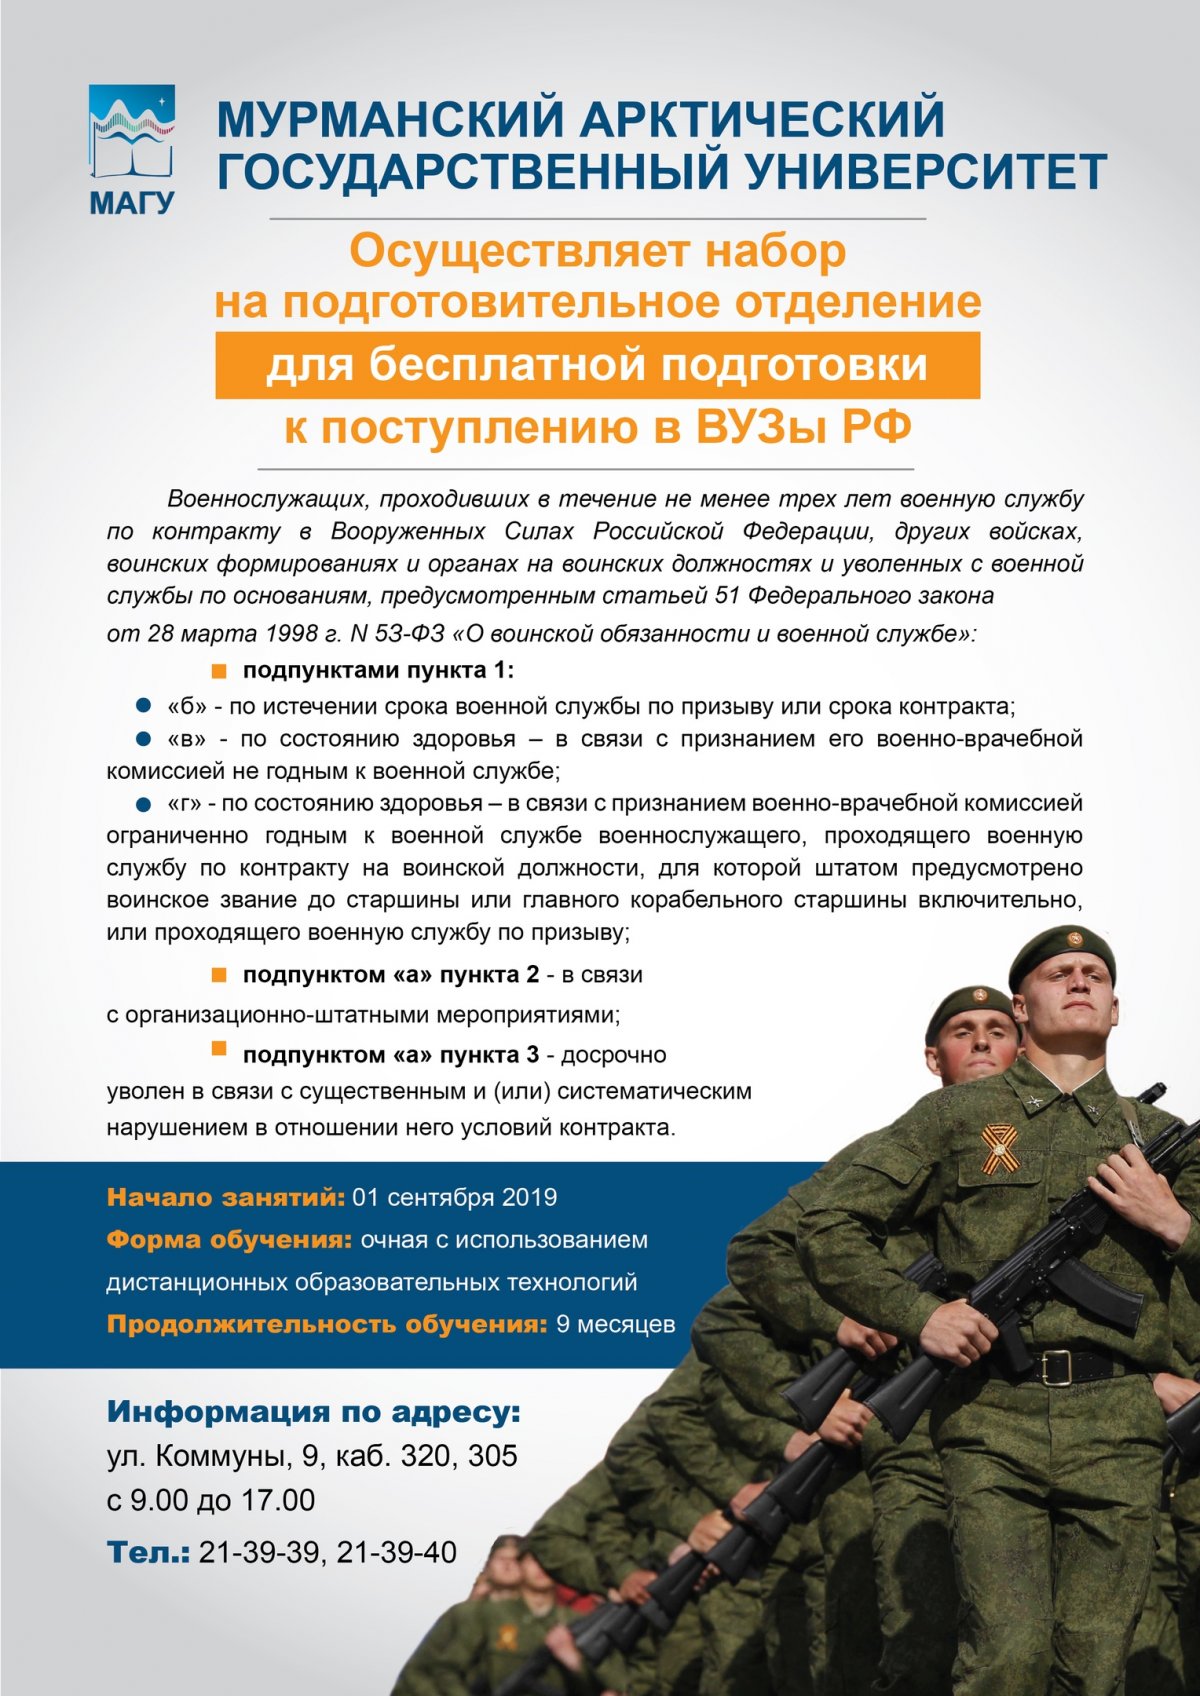 Приглашаем военнослужащих, прошедших службу по контракту не менее трех лет, на подготовительное отделение для бесплатной подготовки к поступлению в вузы РФ